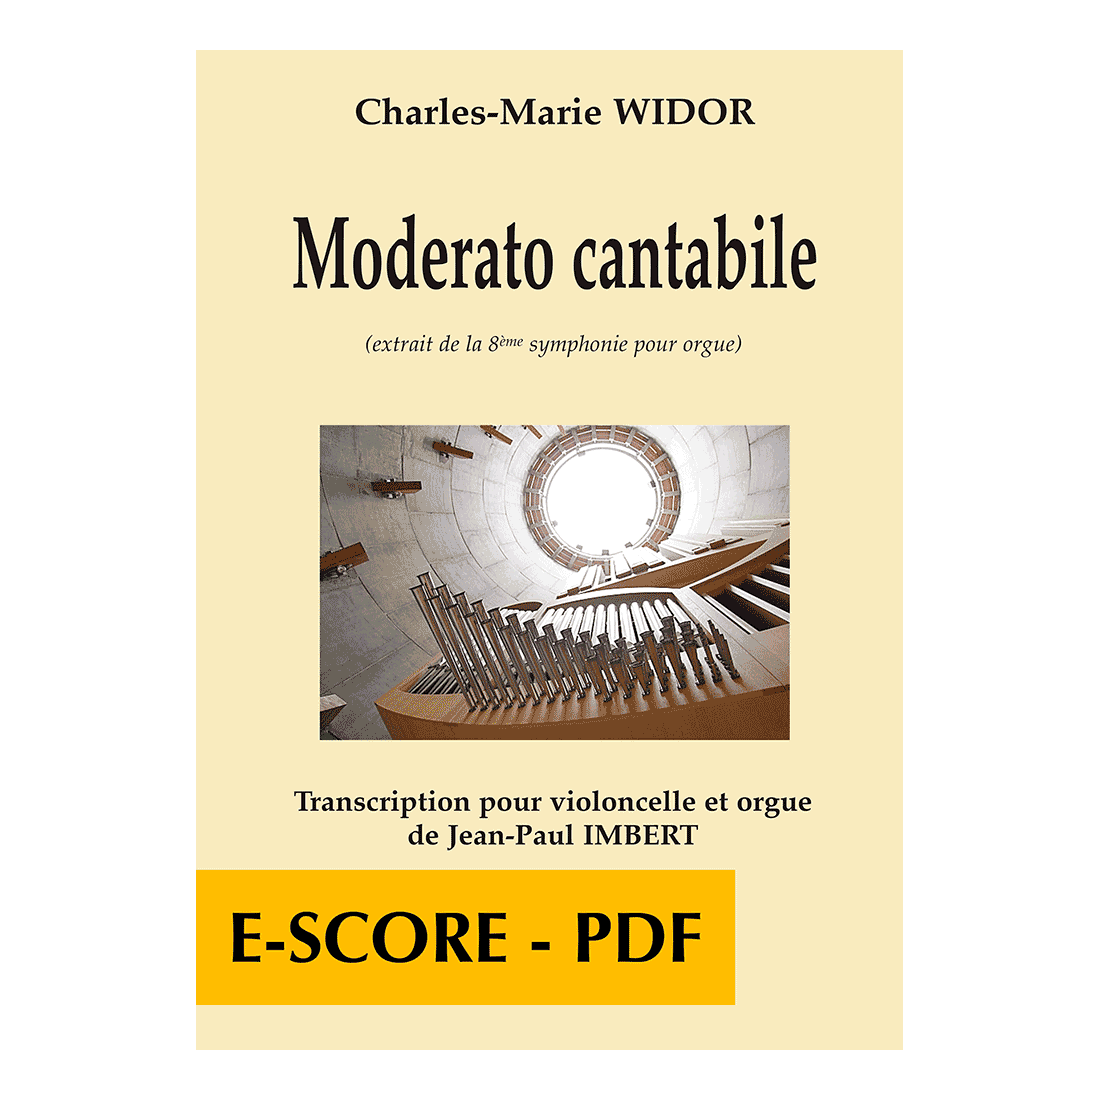 Moderato cantabile pour violoncelle et orgue - E-score PDF